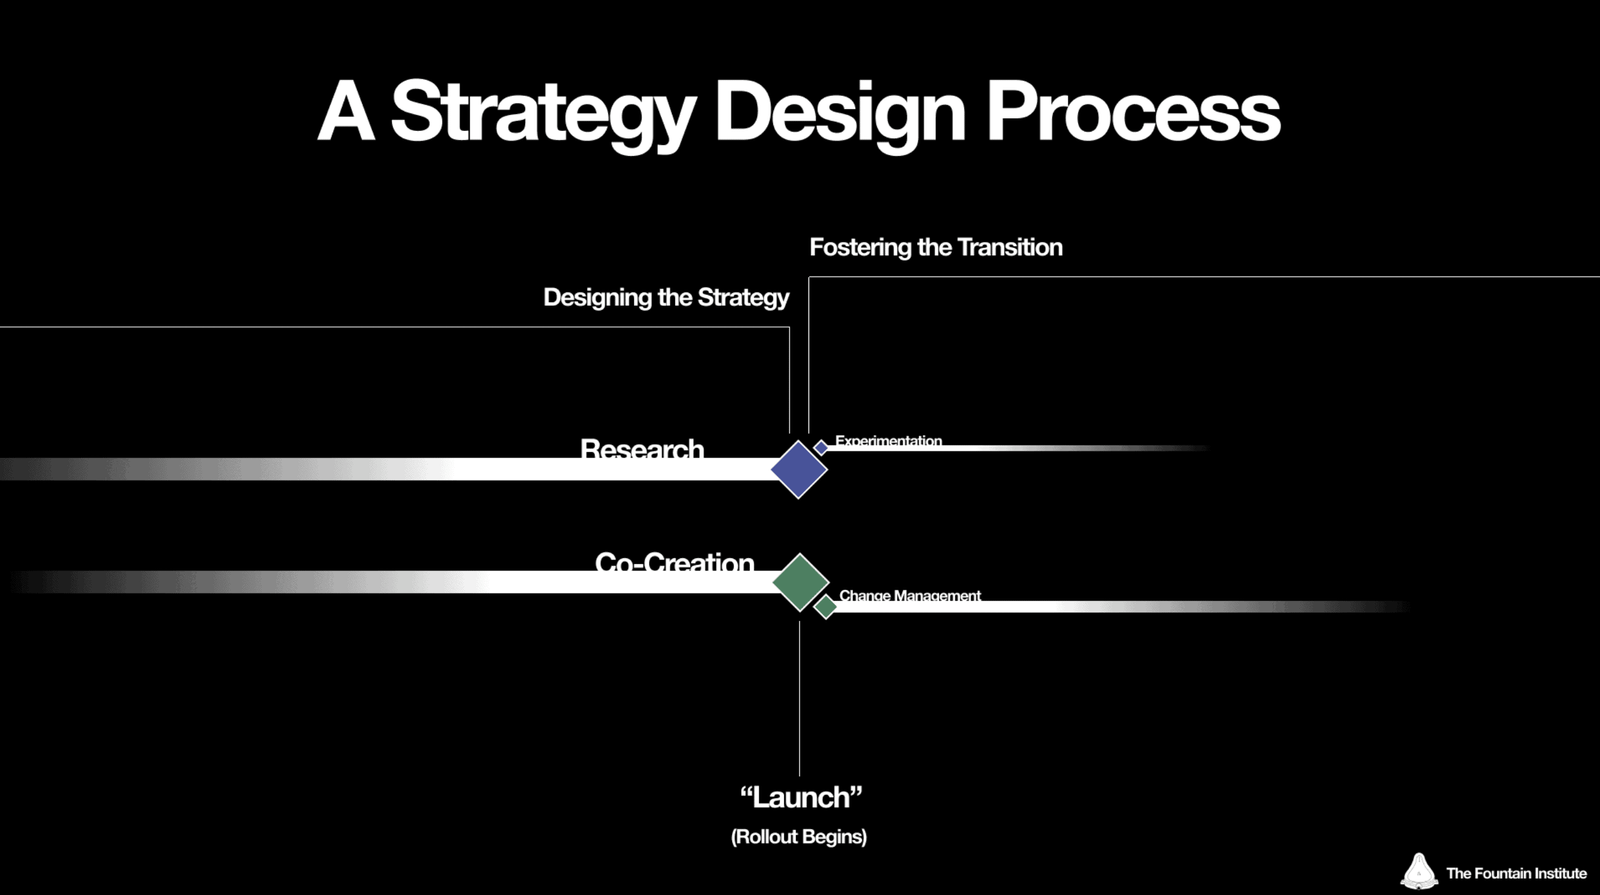 Un processus de design stratégique pour concevoir une stratégie avec recherche, co-création et expérimentation